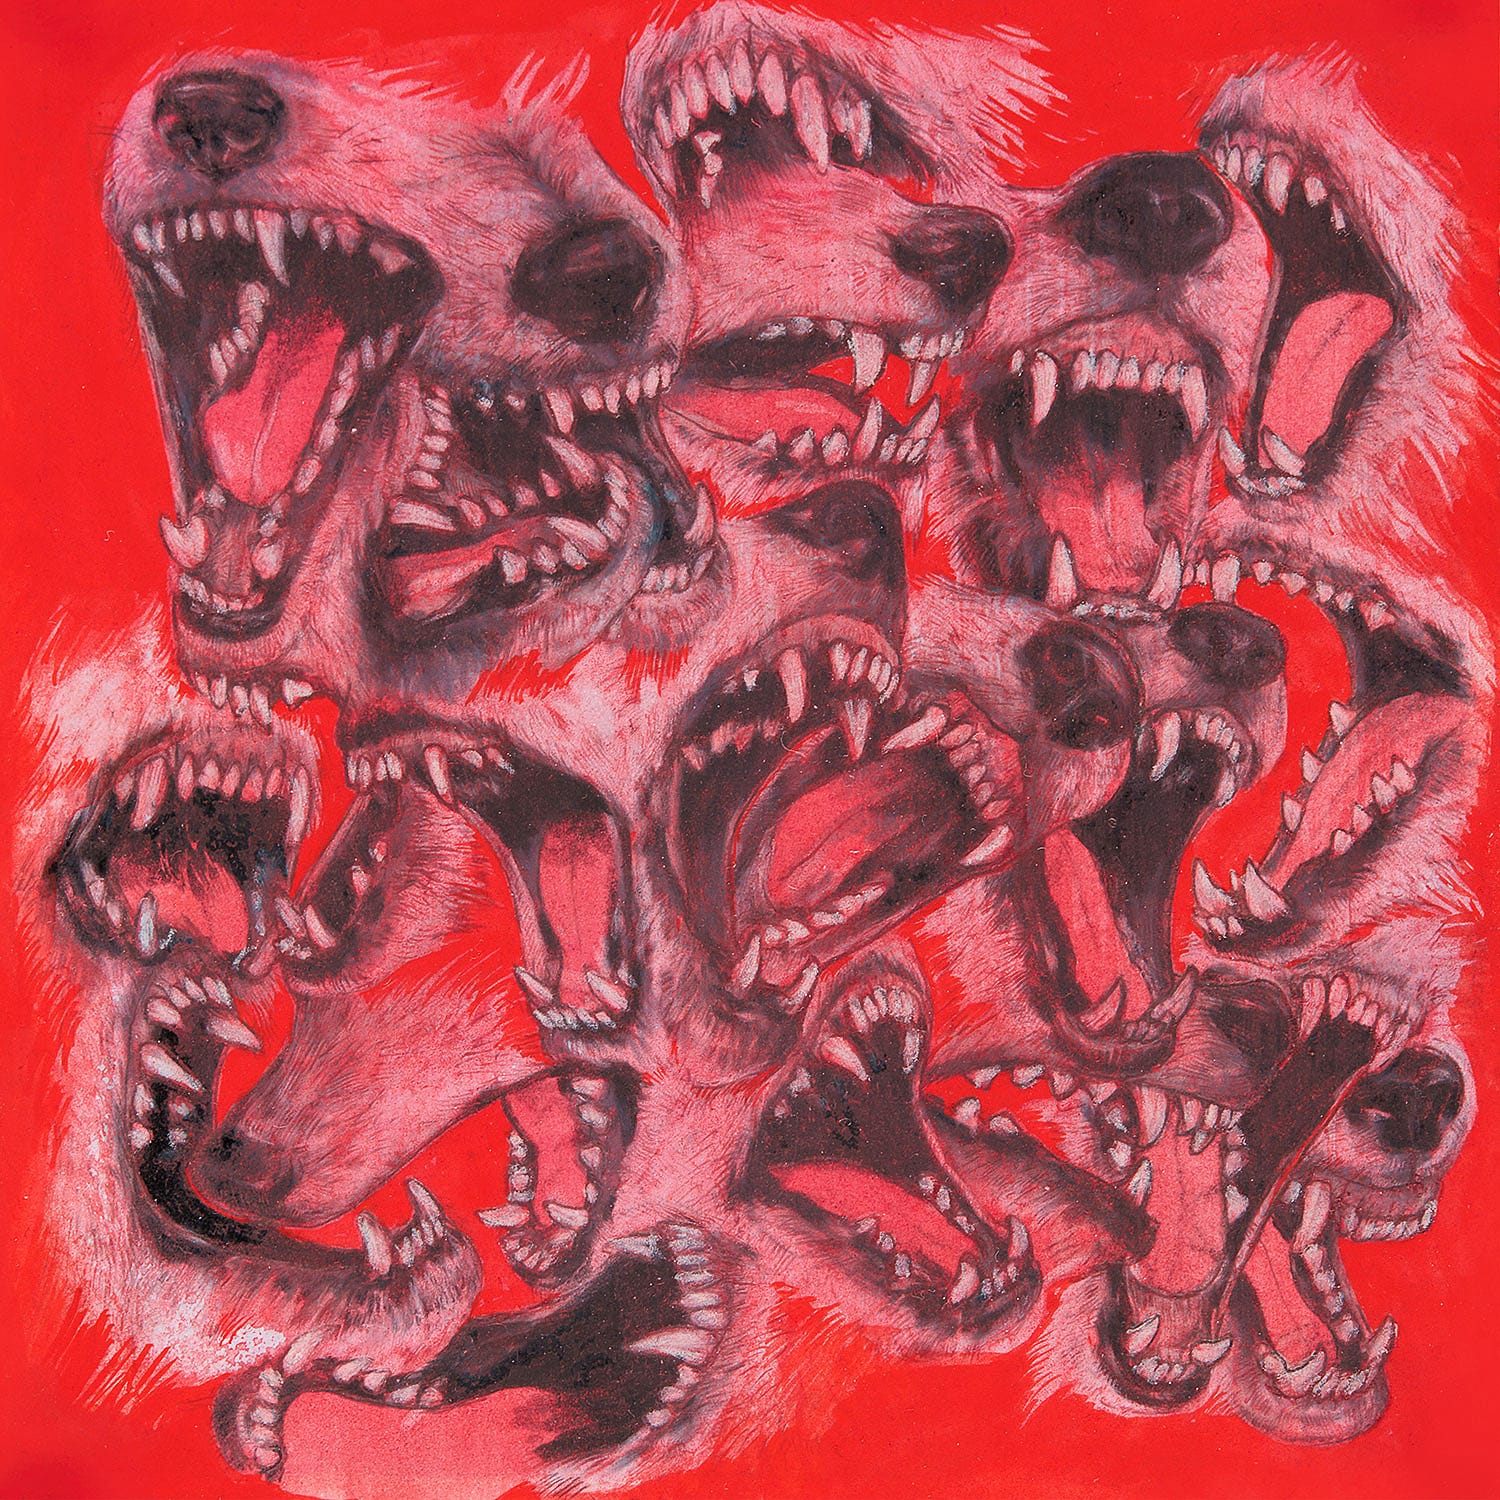 Sur fond rouge de nombreuses mâchoires de loup sont représentées, gueules ouvertes